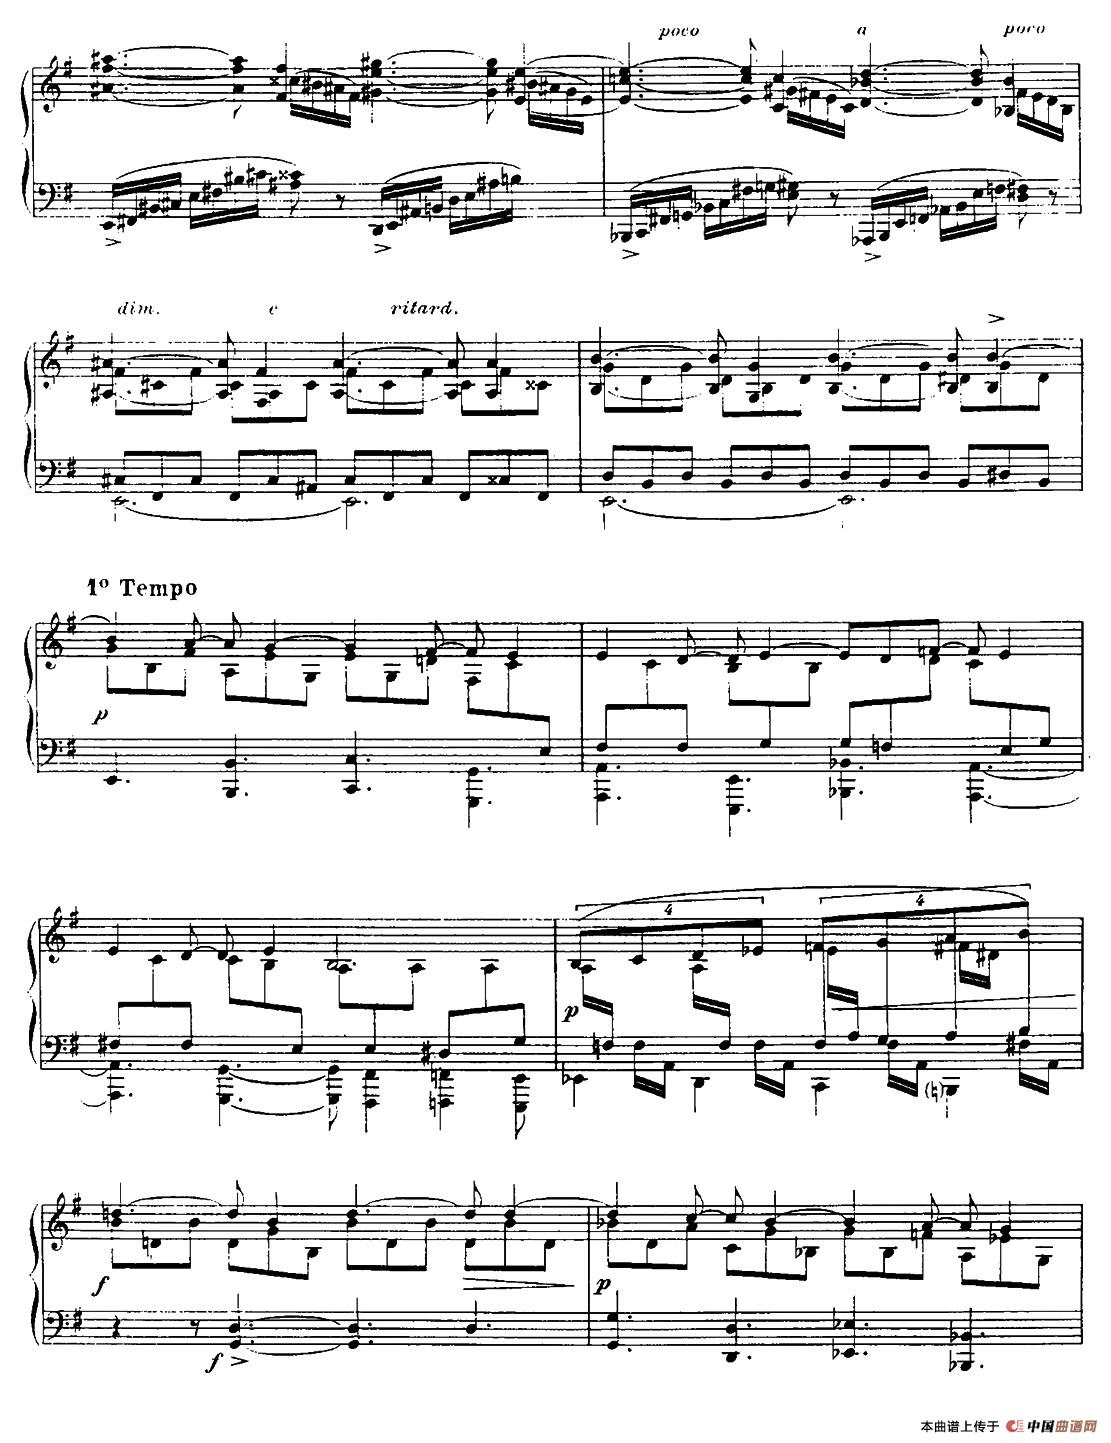 13 Nocturnes, Nocturne No. 12 in E minor （Op.107）(1)_005.jpg